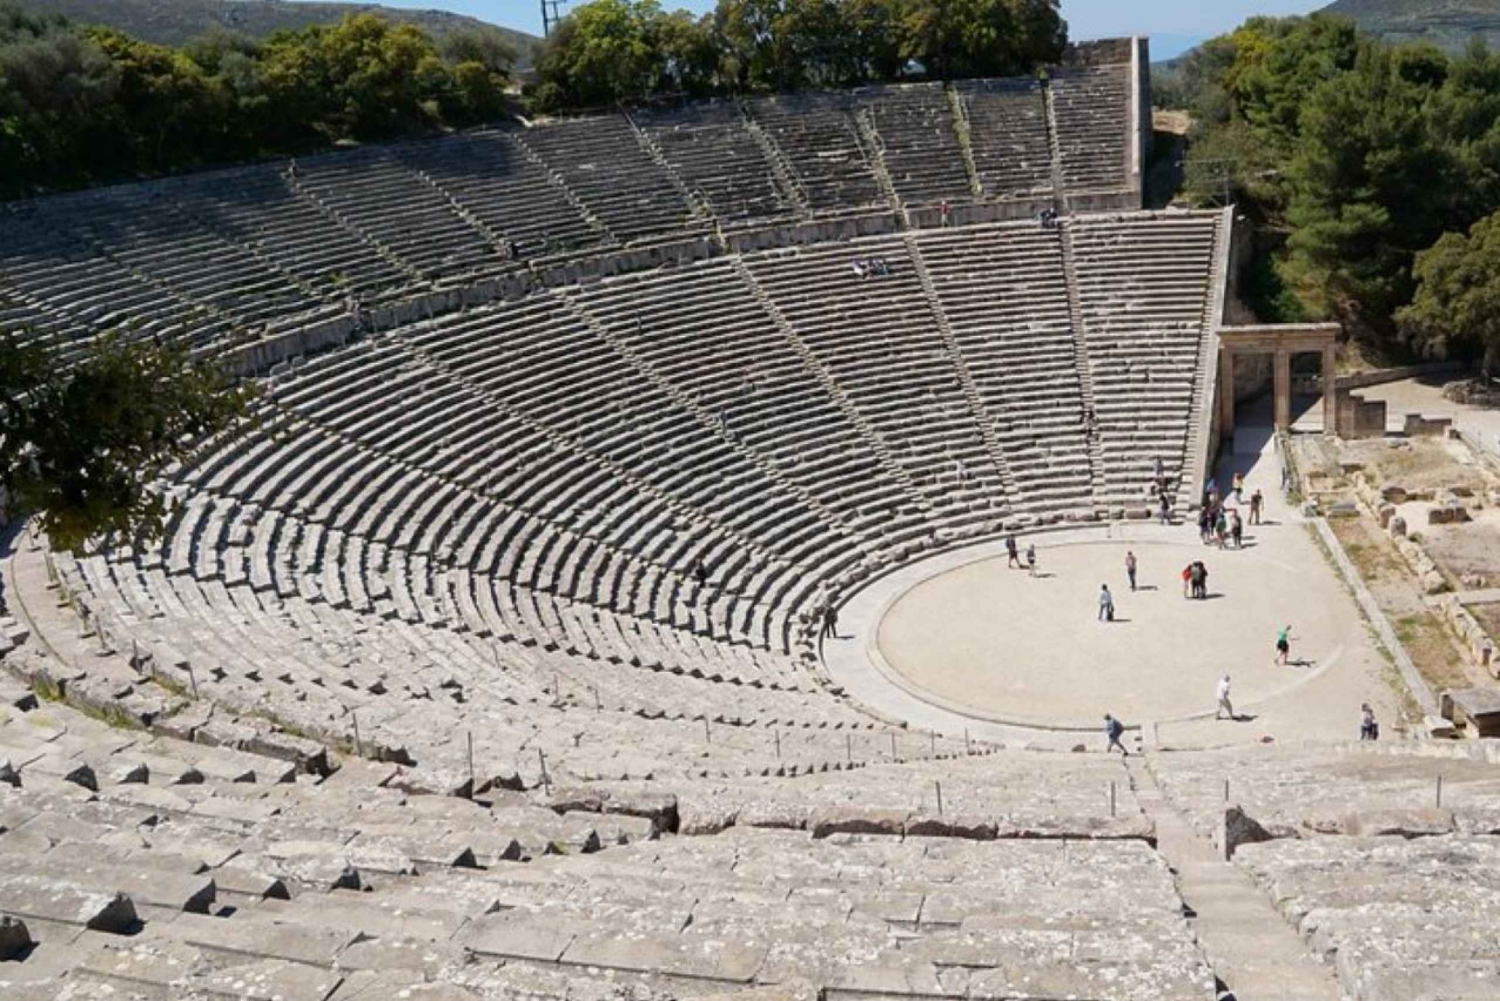 Von Athen aus: Mykene, Epidaurus, Korinth und Nafplio Tour